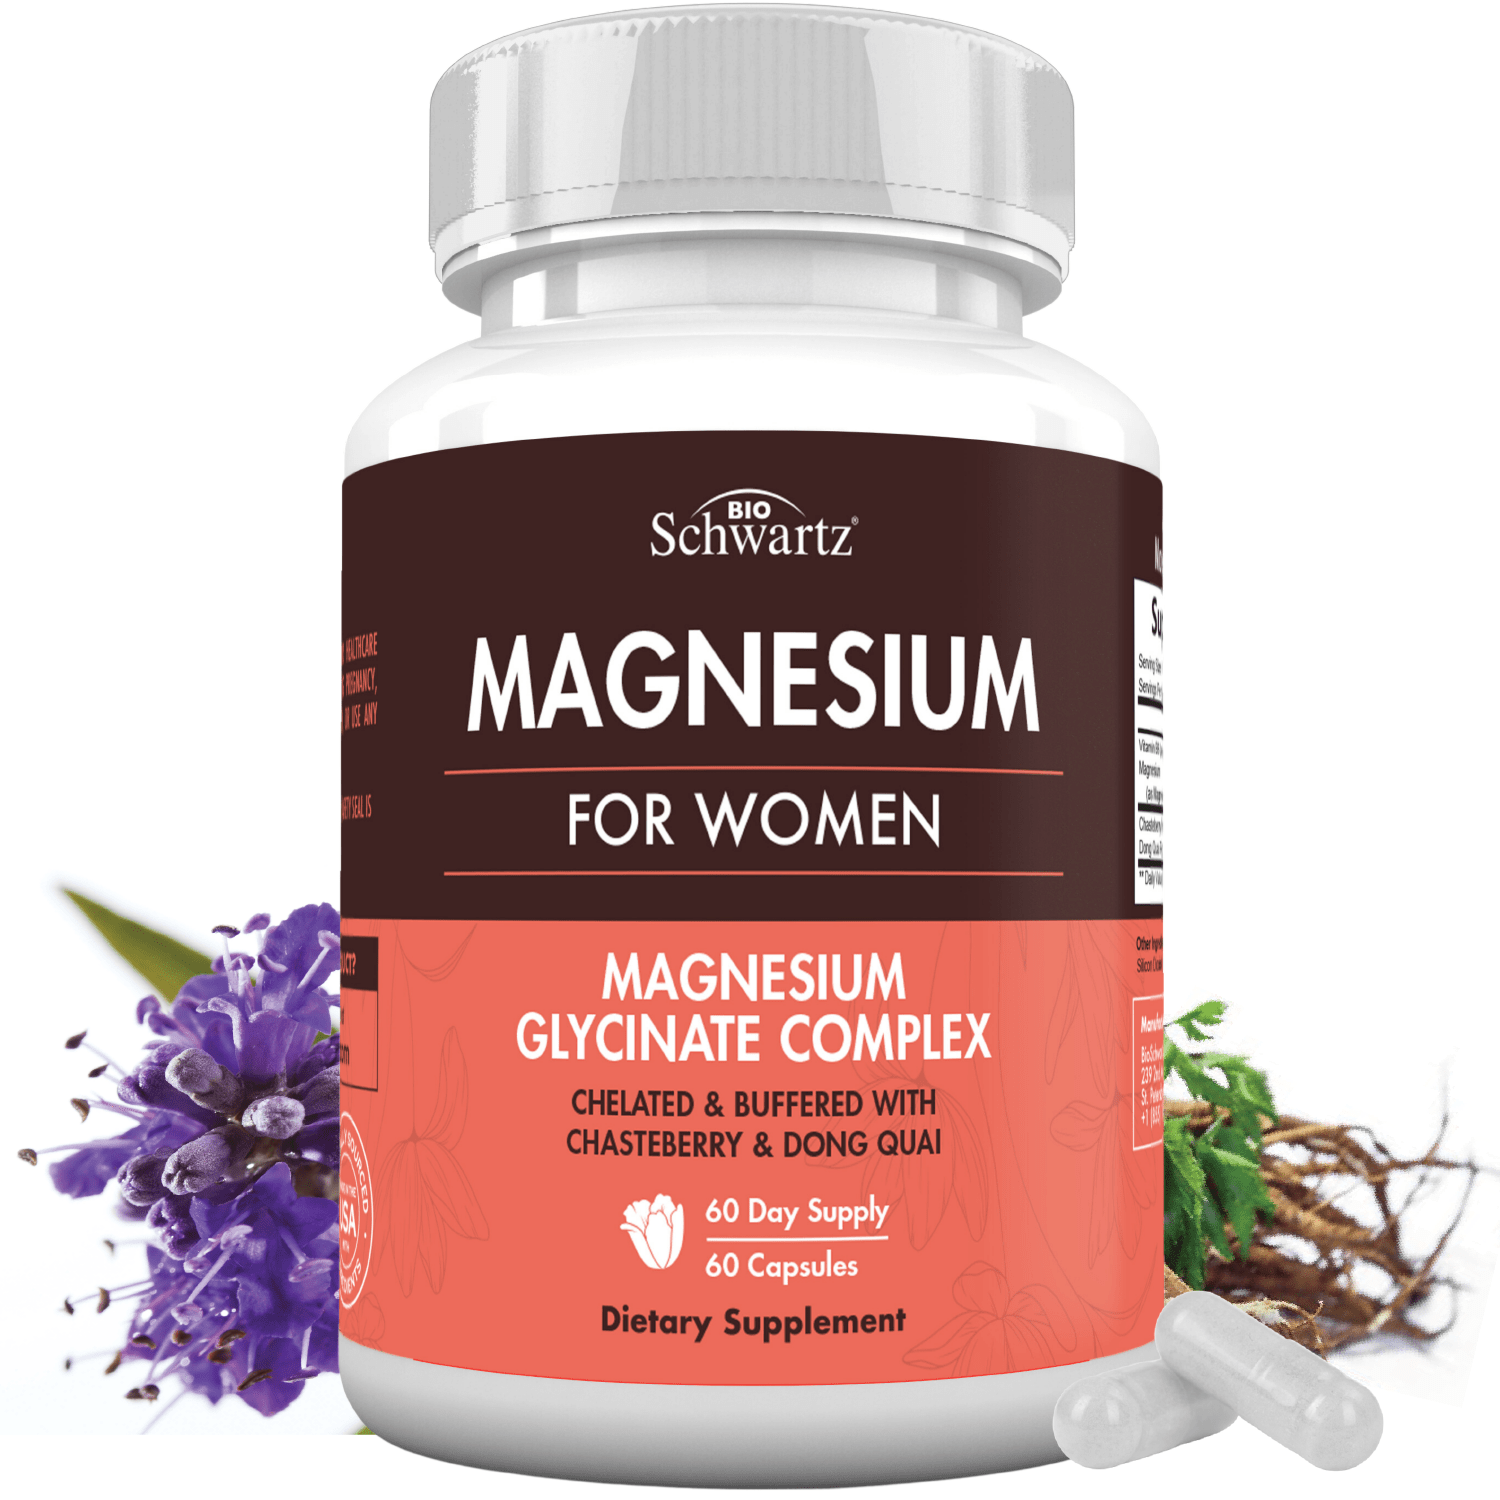 Magnesium for Women - 4 in 1 Magnesium Supplement